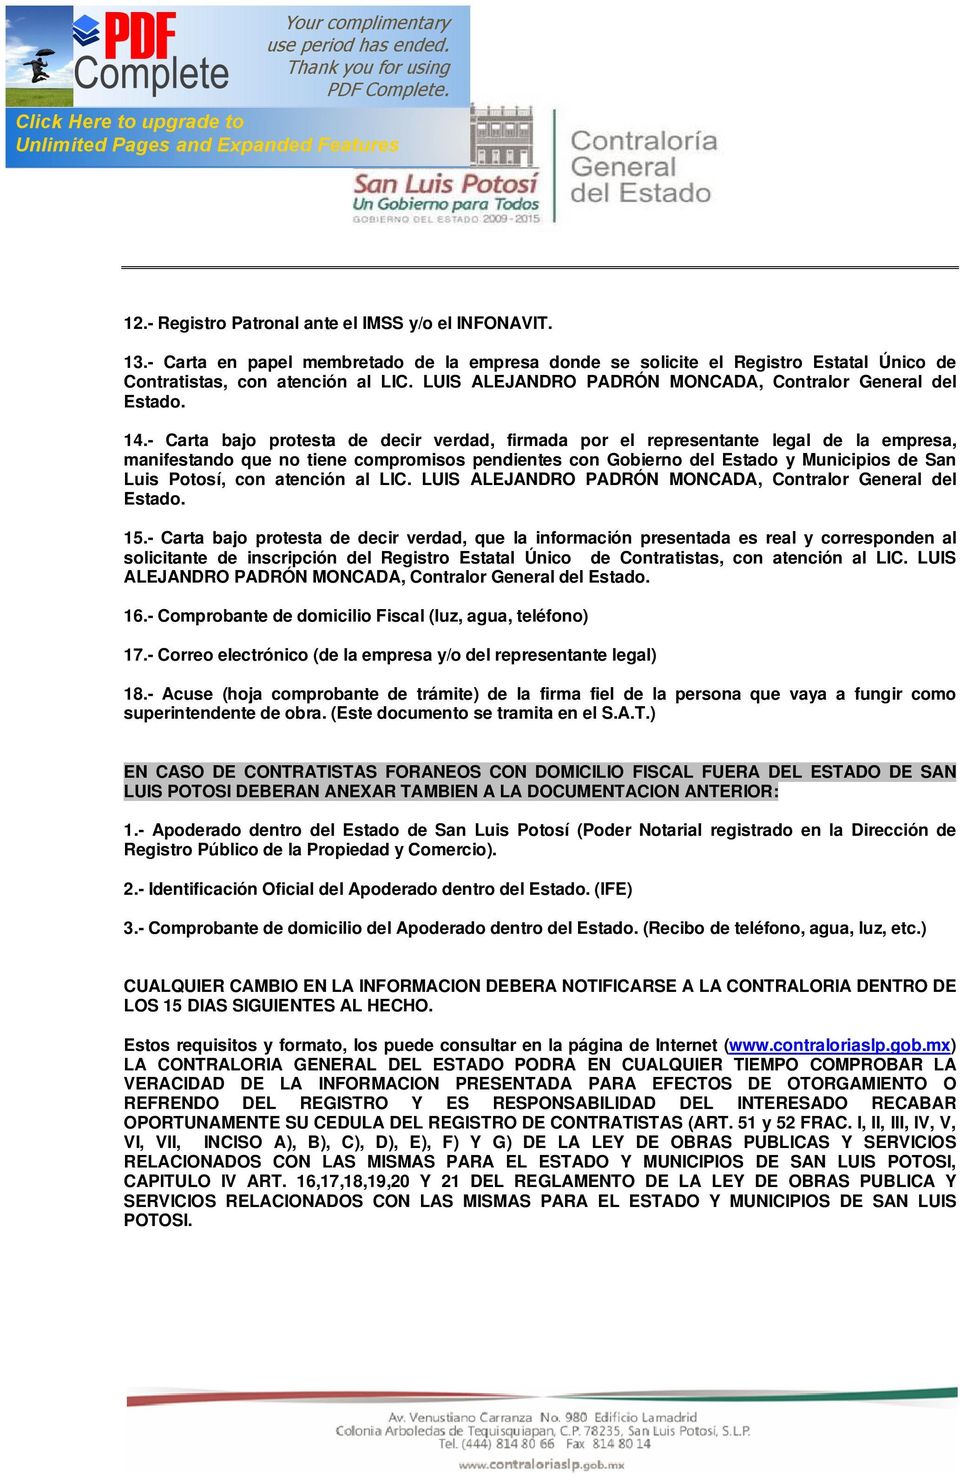 - Carta bajo protesta de decir verdad, firmada por el representante legal de la empresa, manifestando que no tiene compromisos pendientes con Gobierno del Estado y Municipios de San Luis Potosí, con